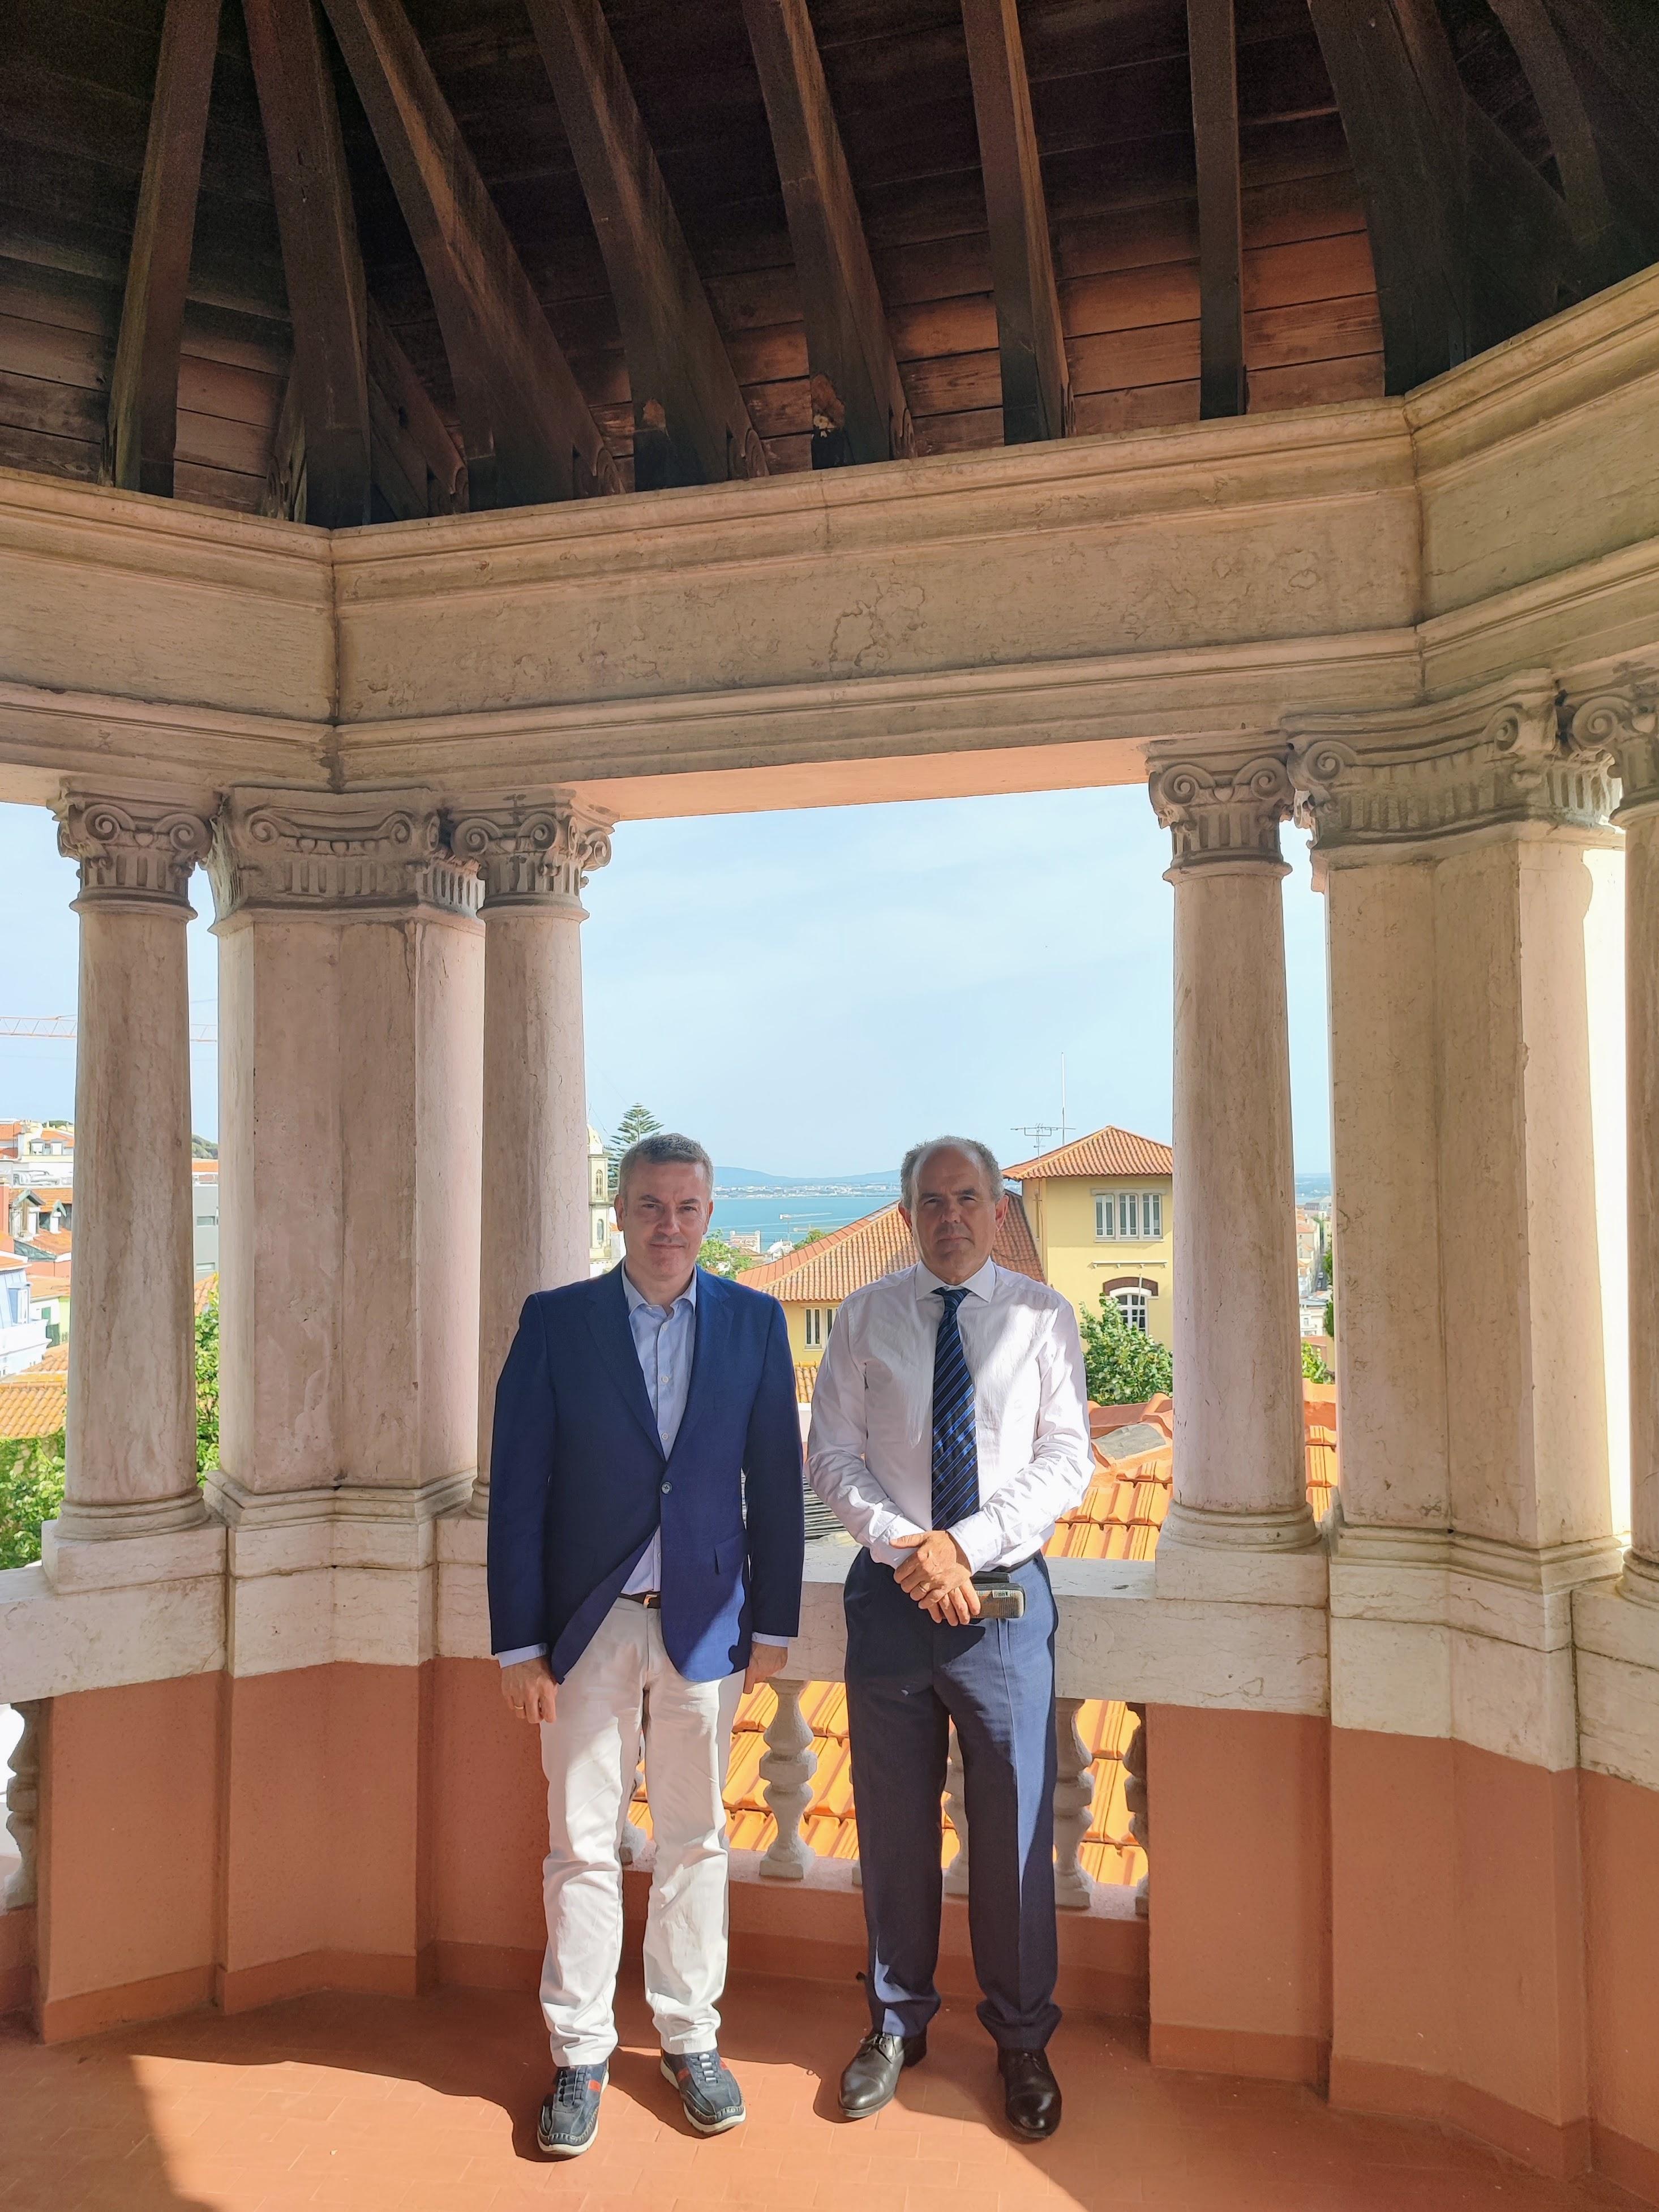 O Alcalde Luis Piña e o Presidente do Centro Galego Jesus Luis Bescos na cúpula do Palacete